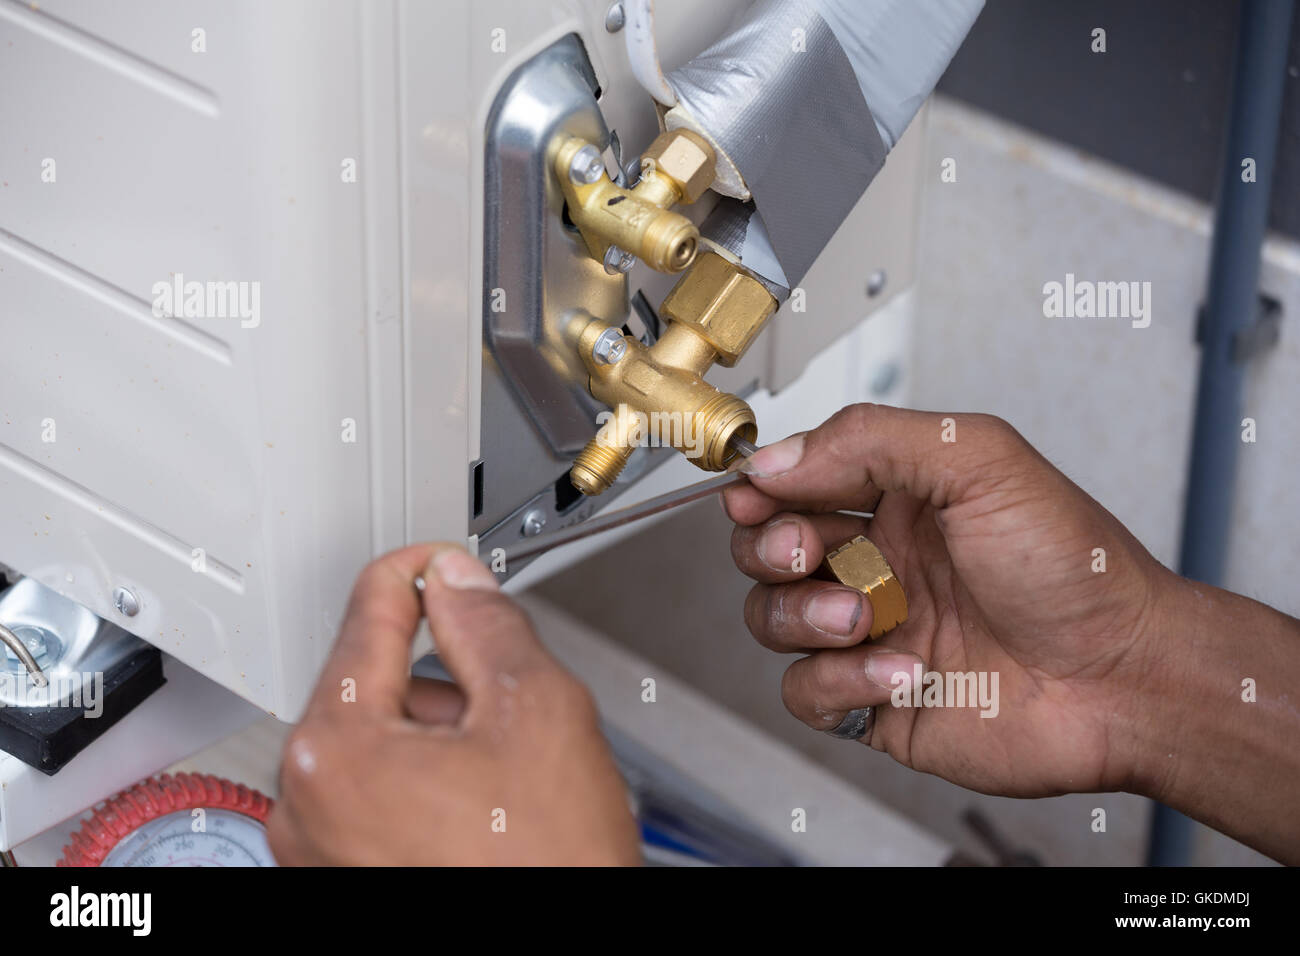 Installation der Klimaanlage, Arbeiter Tropf Ventil öffnen Stockfotografie  - Alamy